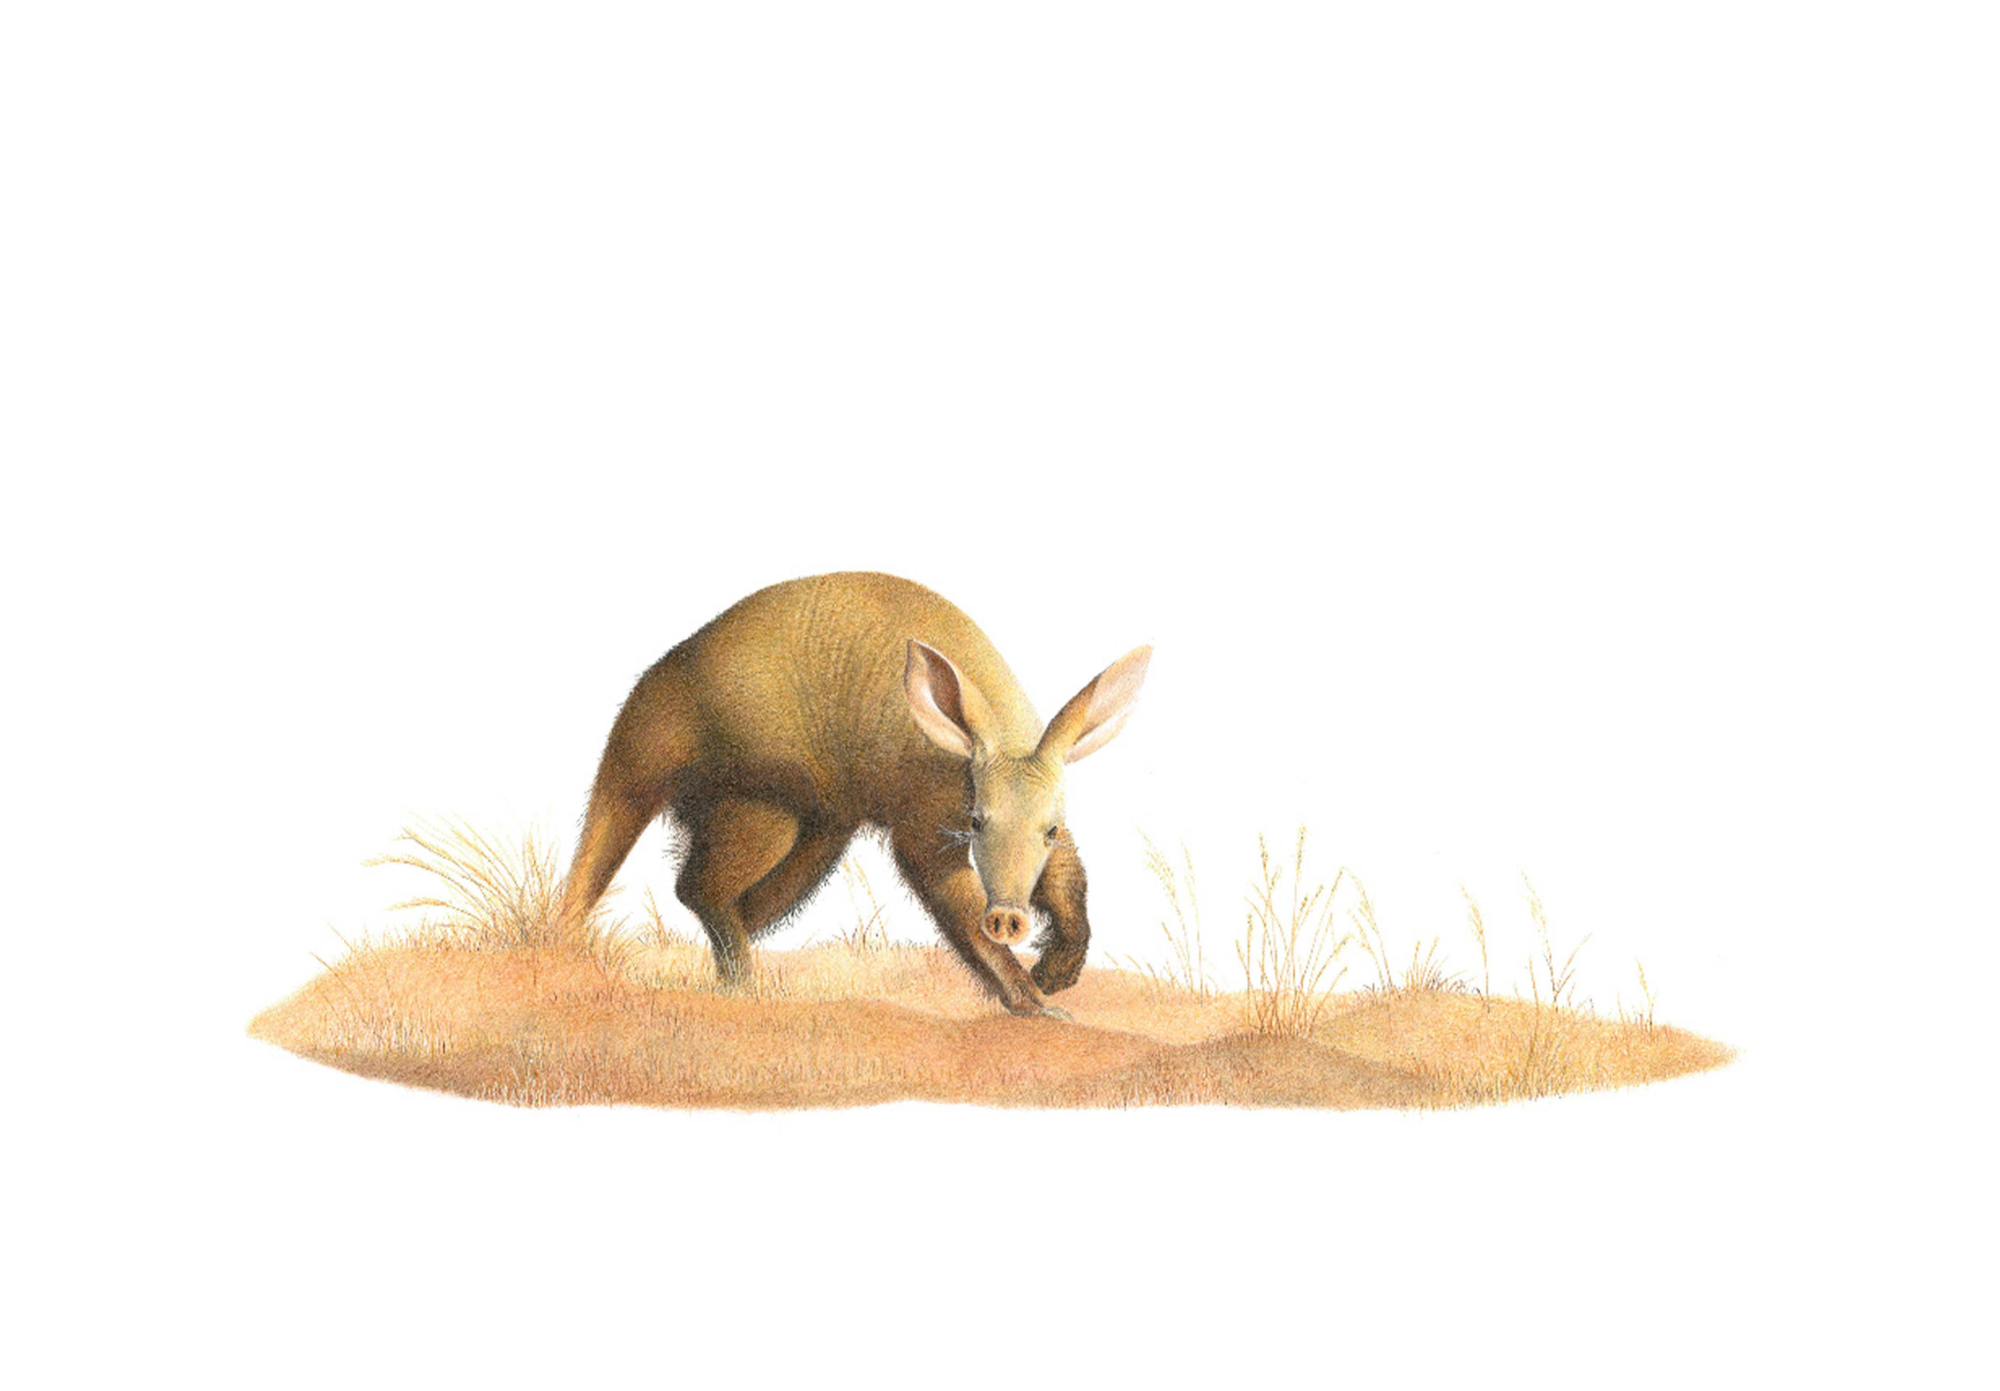 Aardvark by Matthew Bell